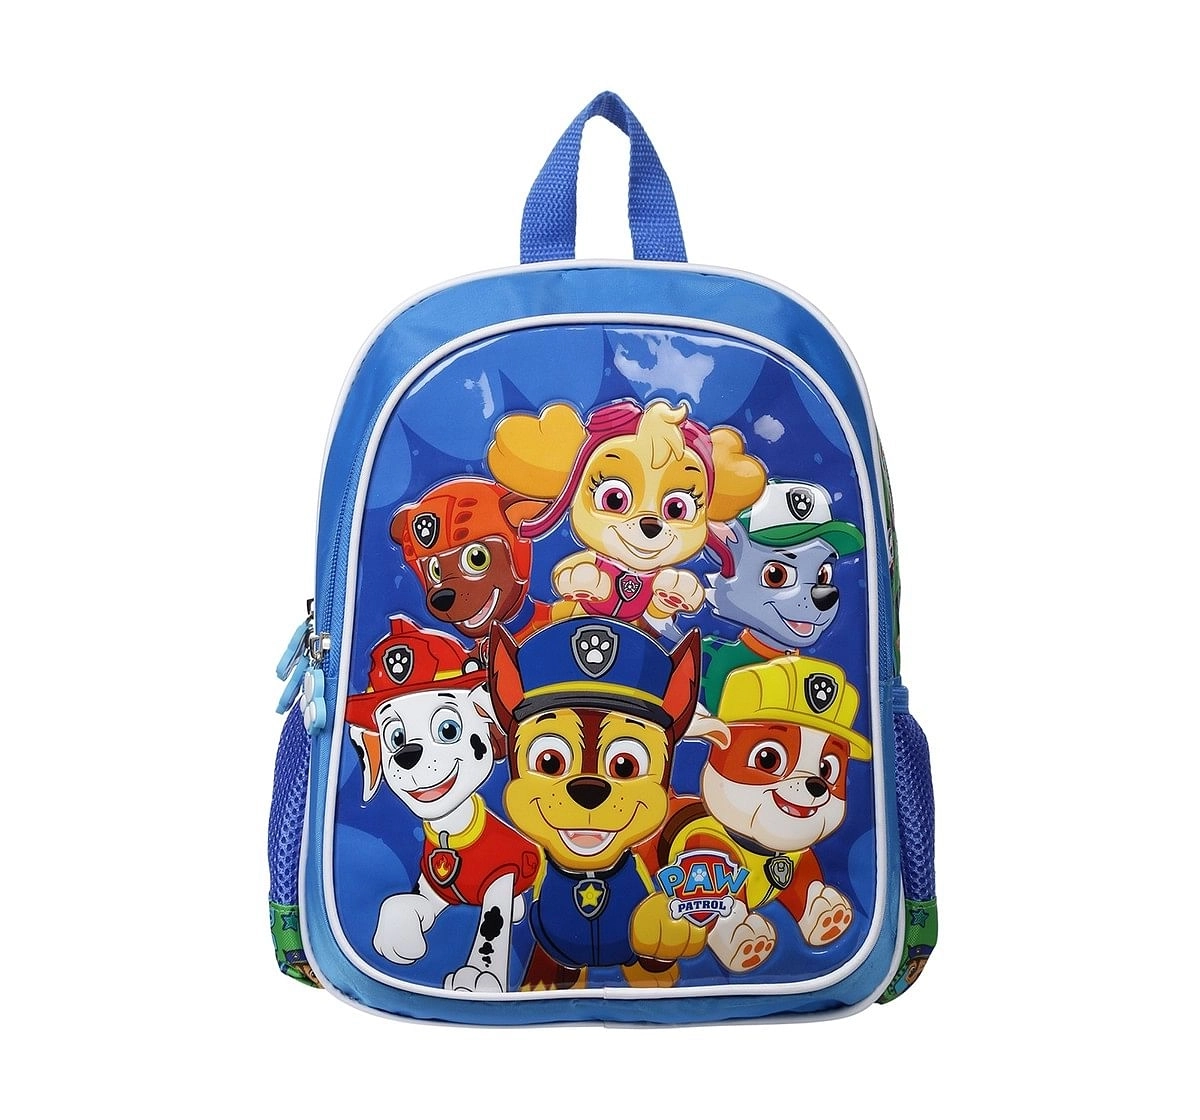 Paw Patrol Buddies 12 Backpack Bags for Kids age 3Y+ 